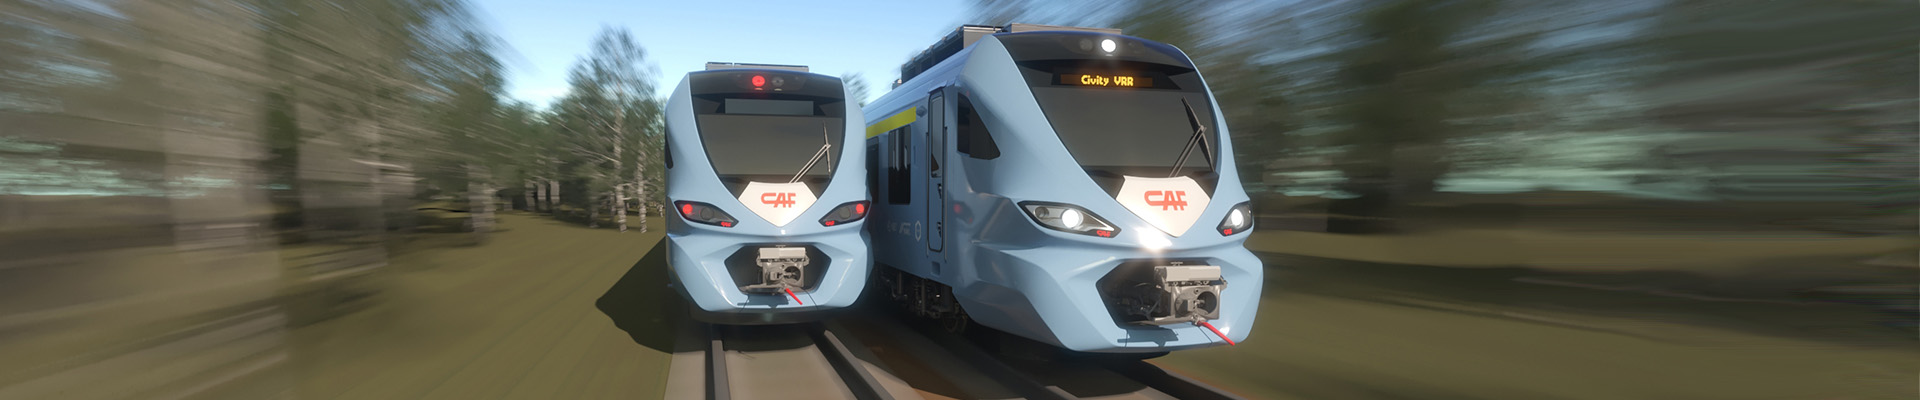 Zwei CAF Züge fahren auf Gleisen nebeneinander